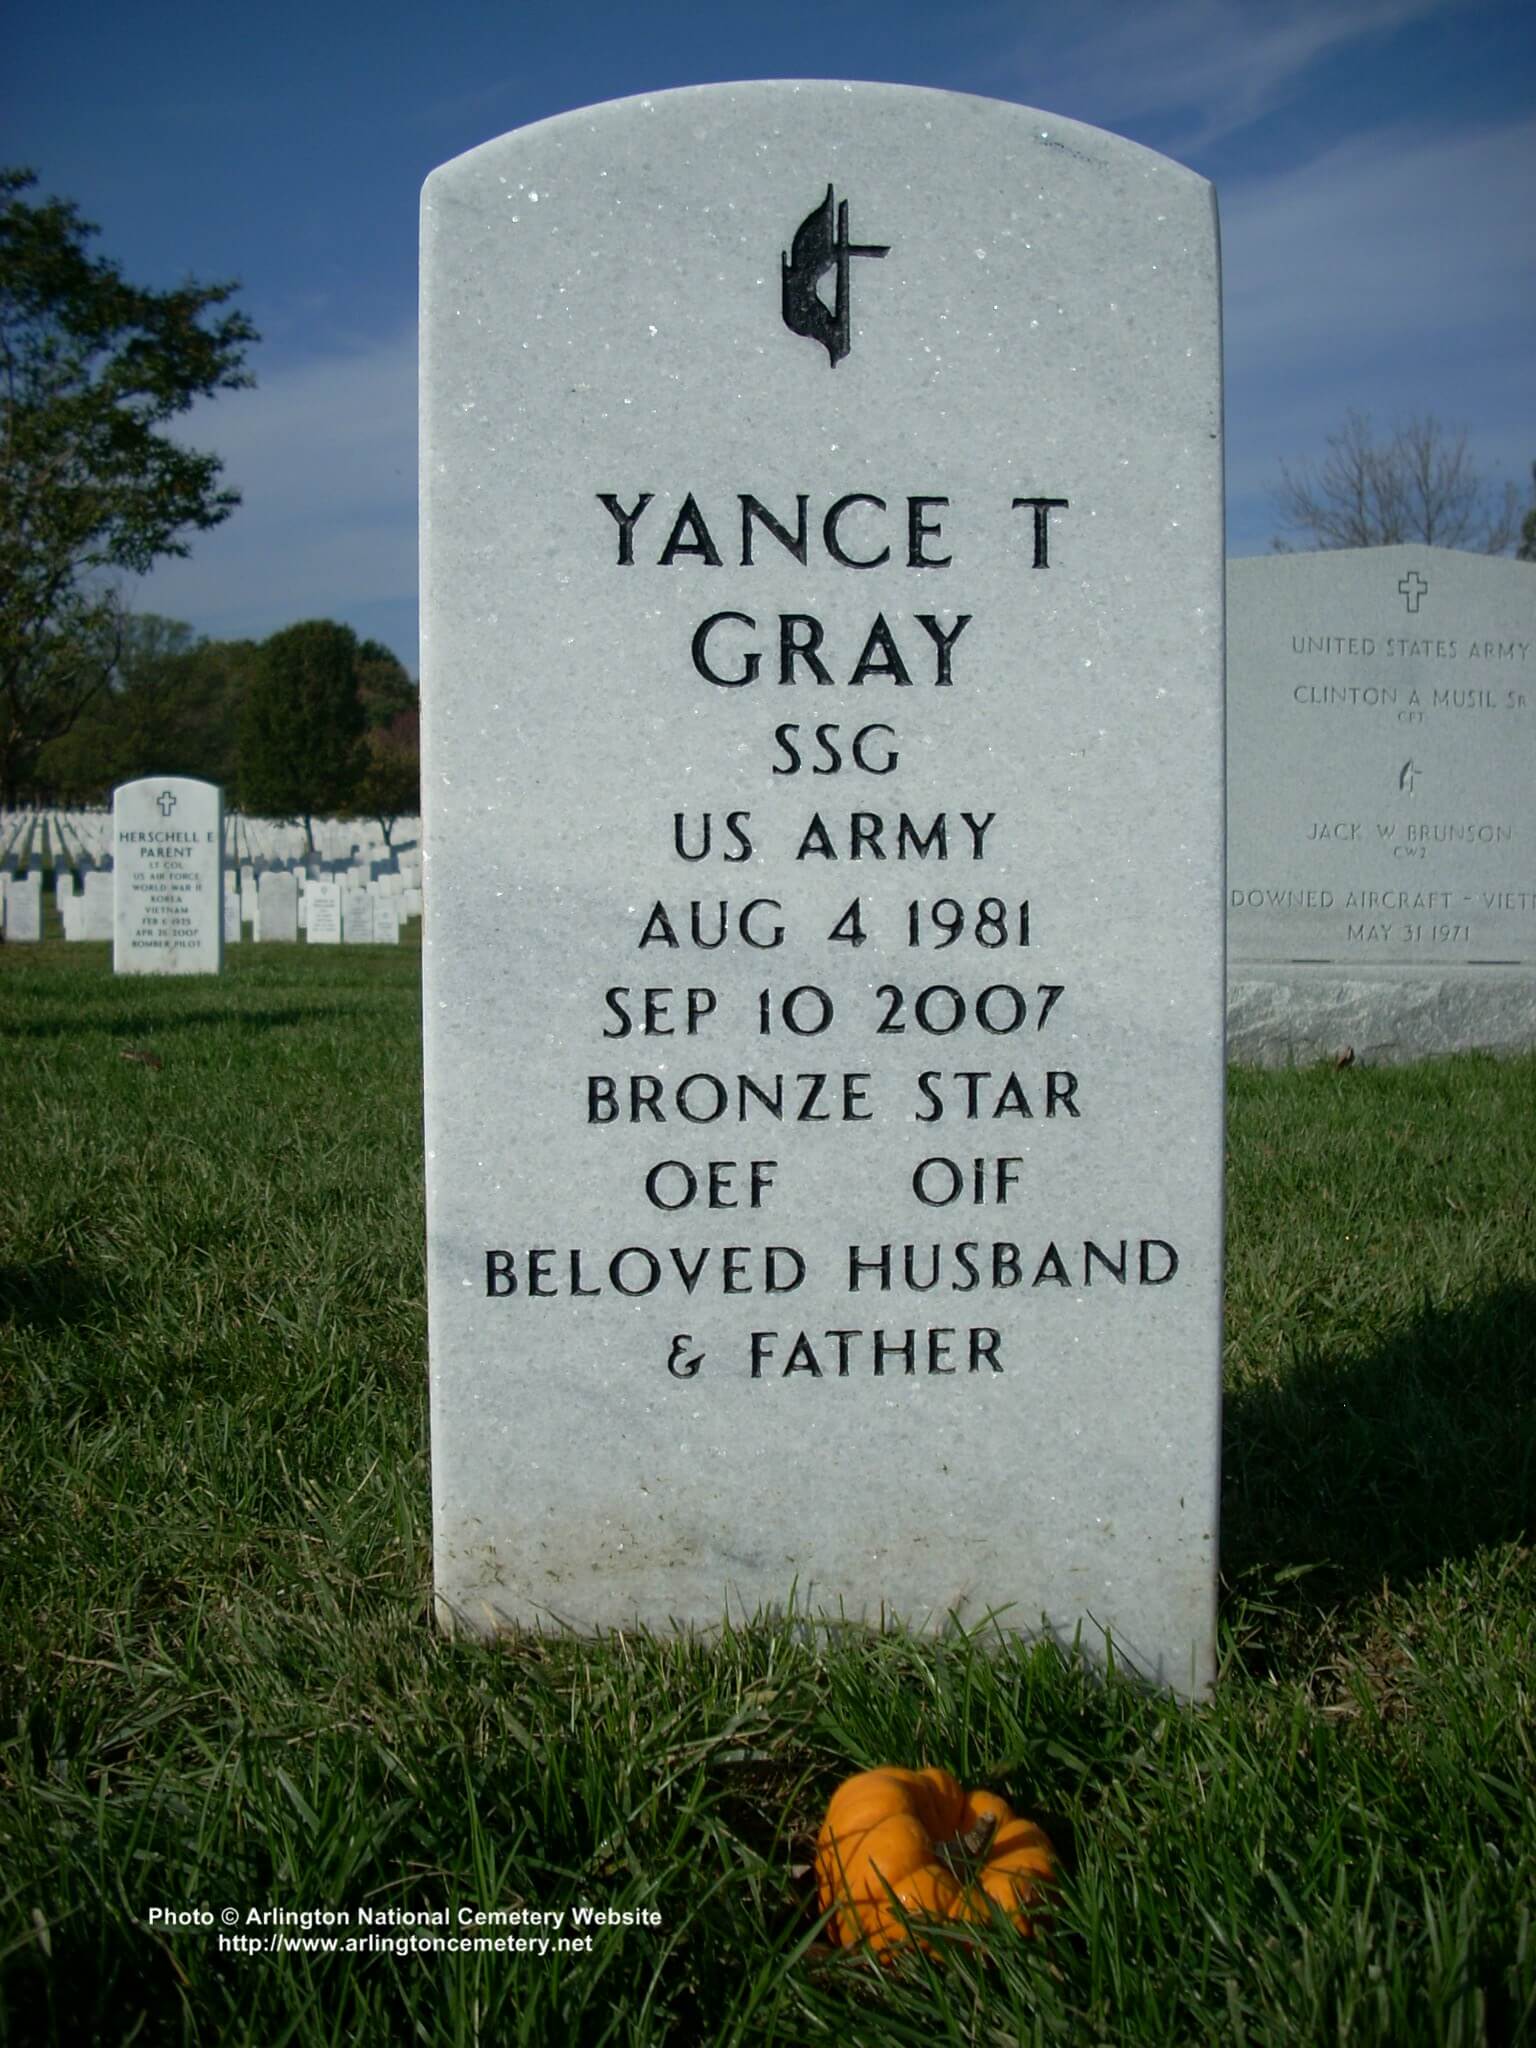 ytgray-gravesite-photo-november-2007-001